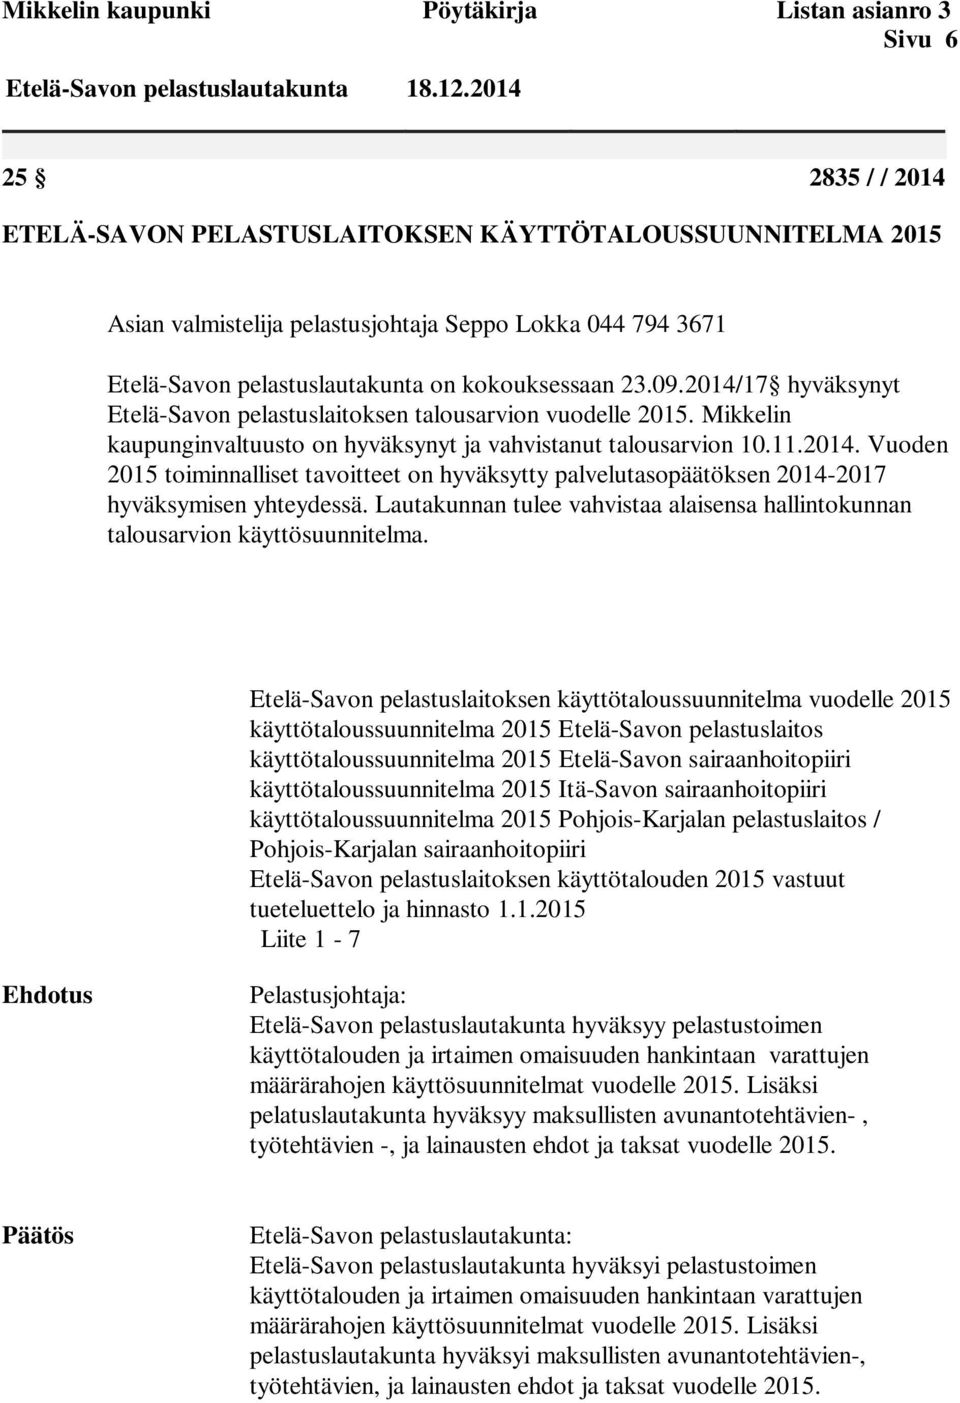 2014/17 hyväksynyt Etelä-Savon pelastuslaitoksen talousarvion vuodelle 2015. Mikkelin kaupunginvaltuusto on hyväksynyt ja vahvistanut talousarvion 10.11.2014. Vuoden 2015 toiminnalliset tavoitteet on hyväksytty palvelutasopäätöksen 2014-2017 hyväksymisen yhteydessä.